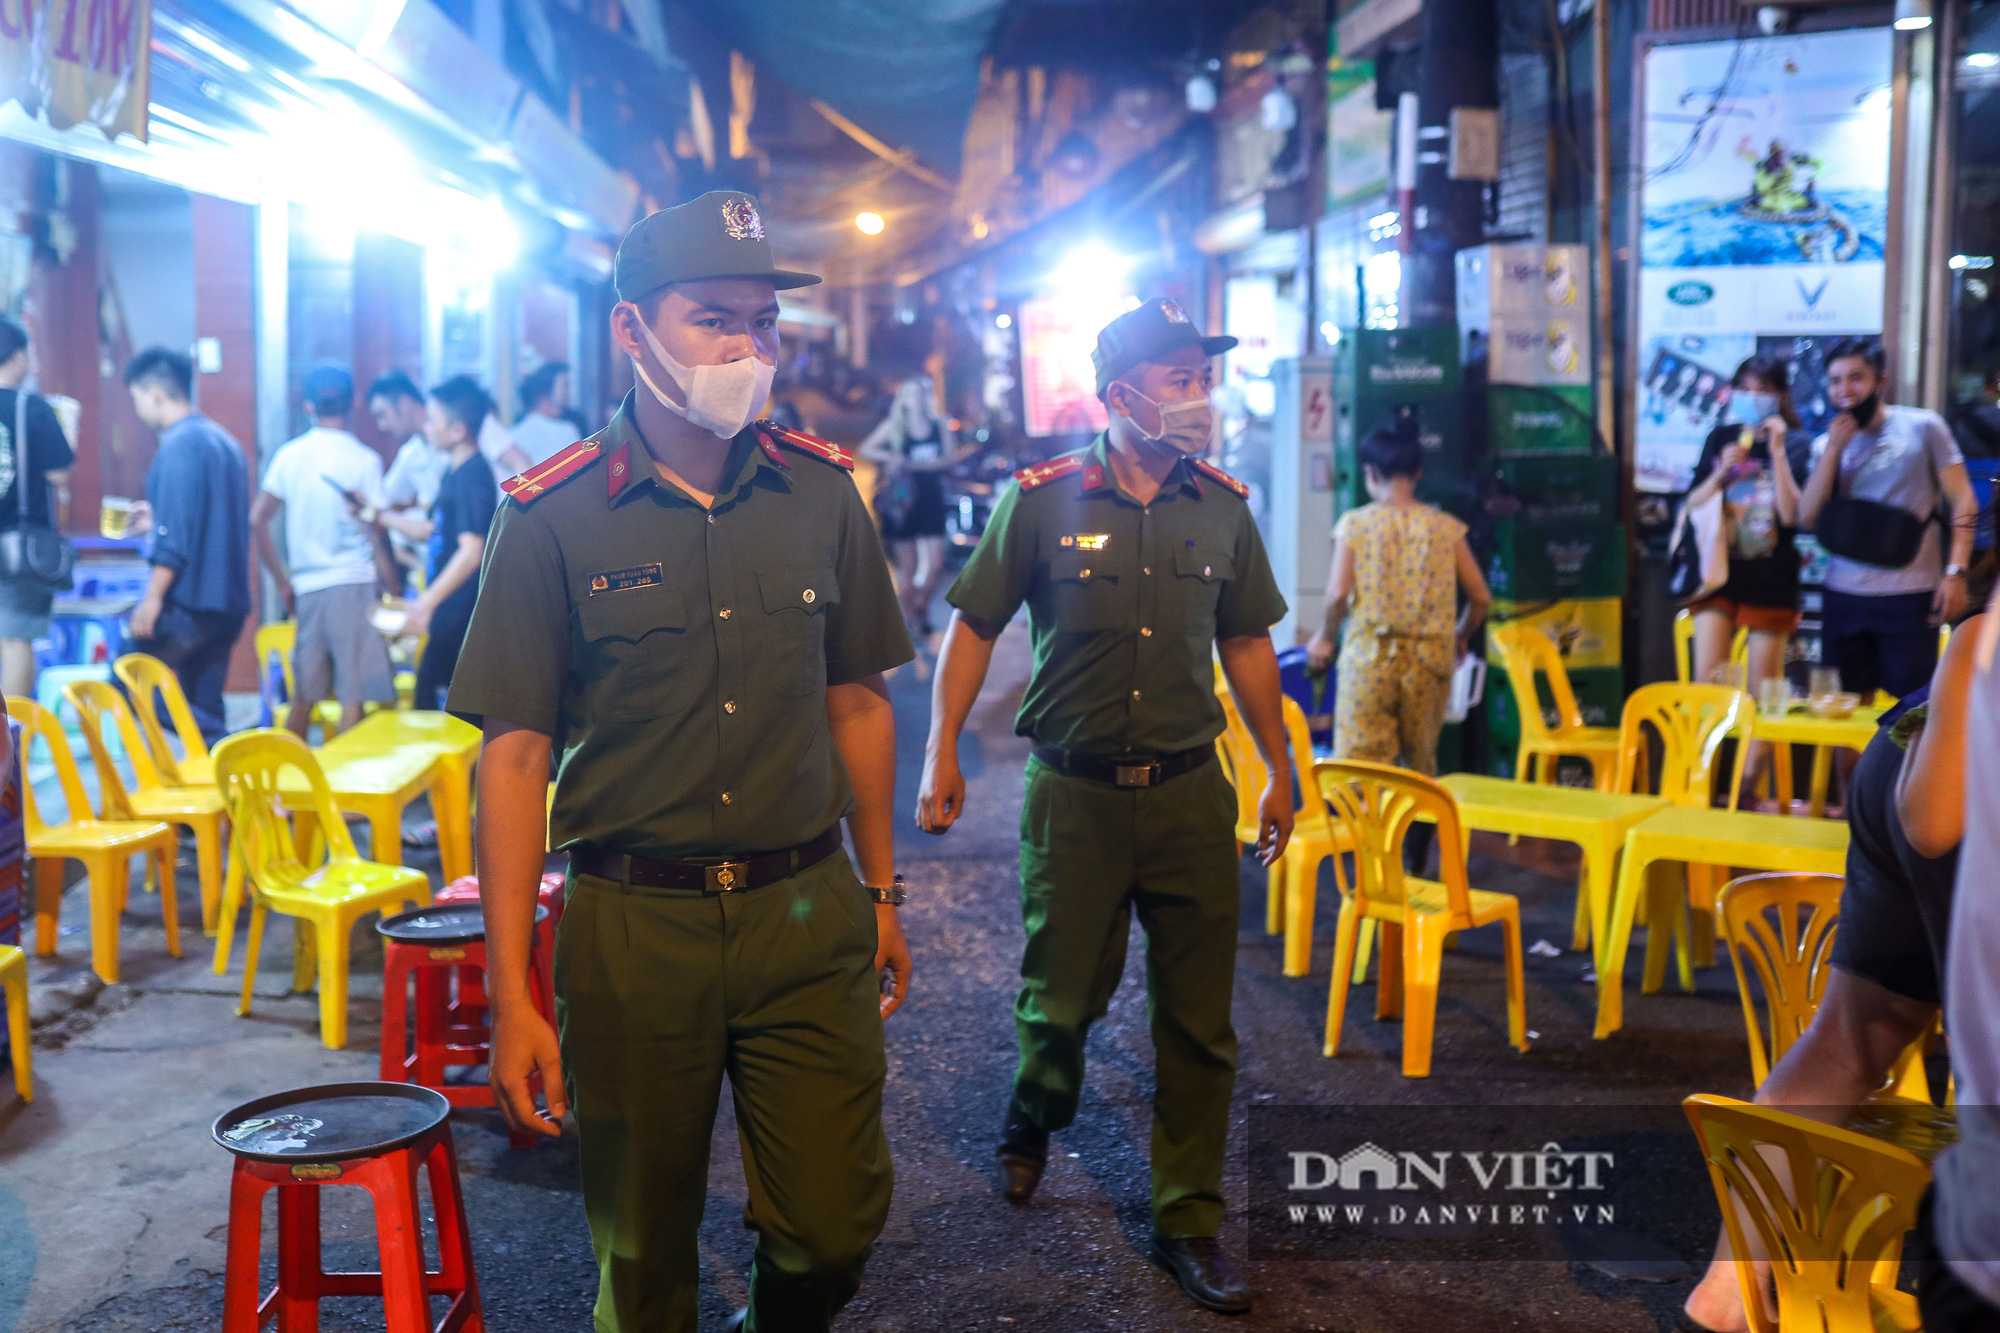 Hàng, quán ở Hà Nội đồng loạt thực hiện giãn cách trong đêm - Ảnh 5.